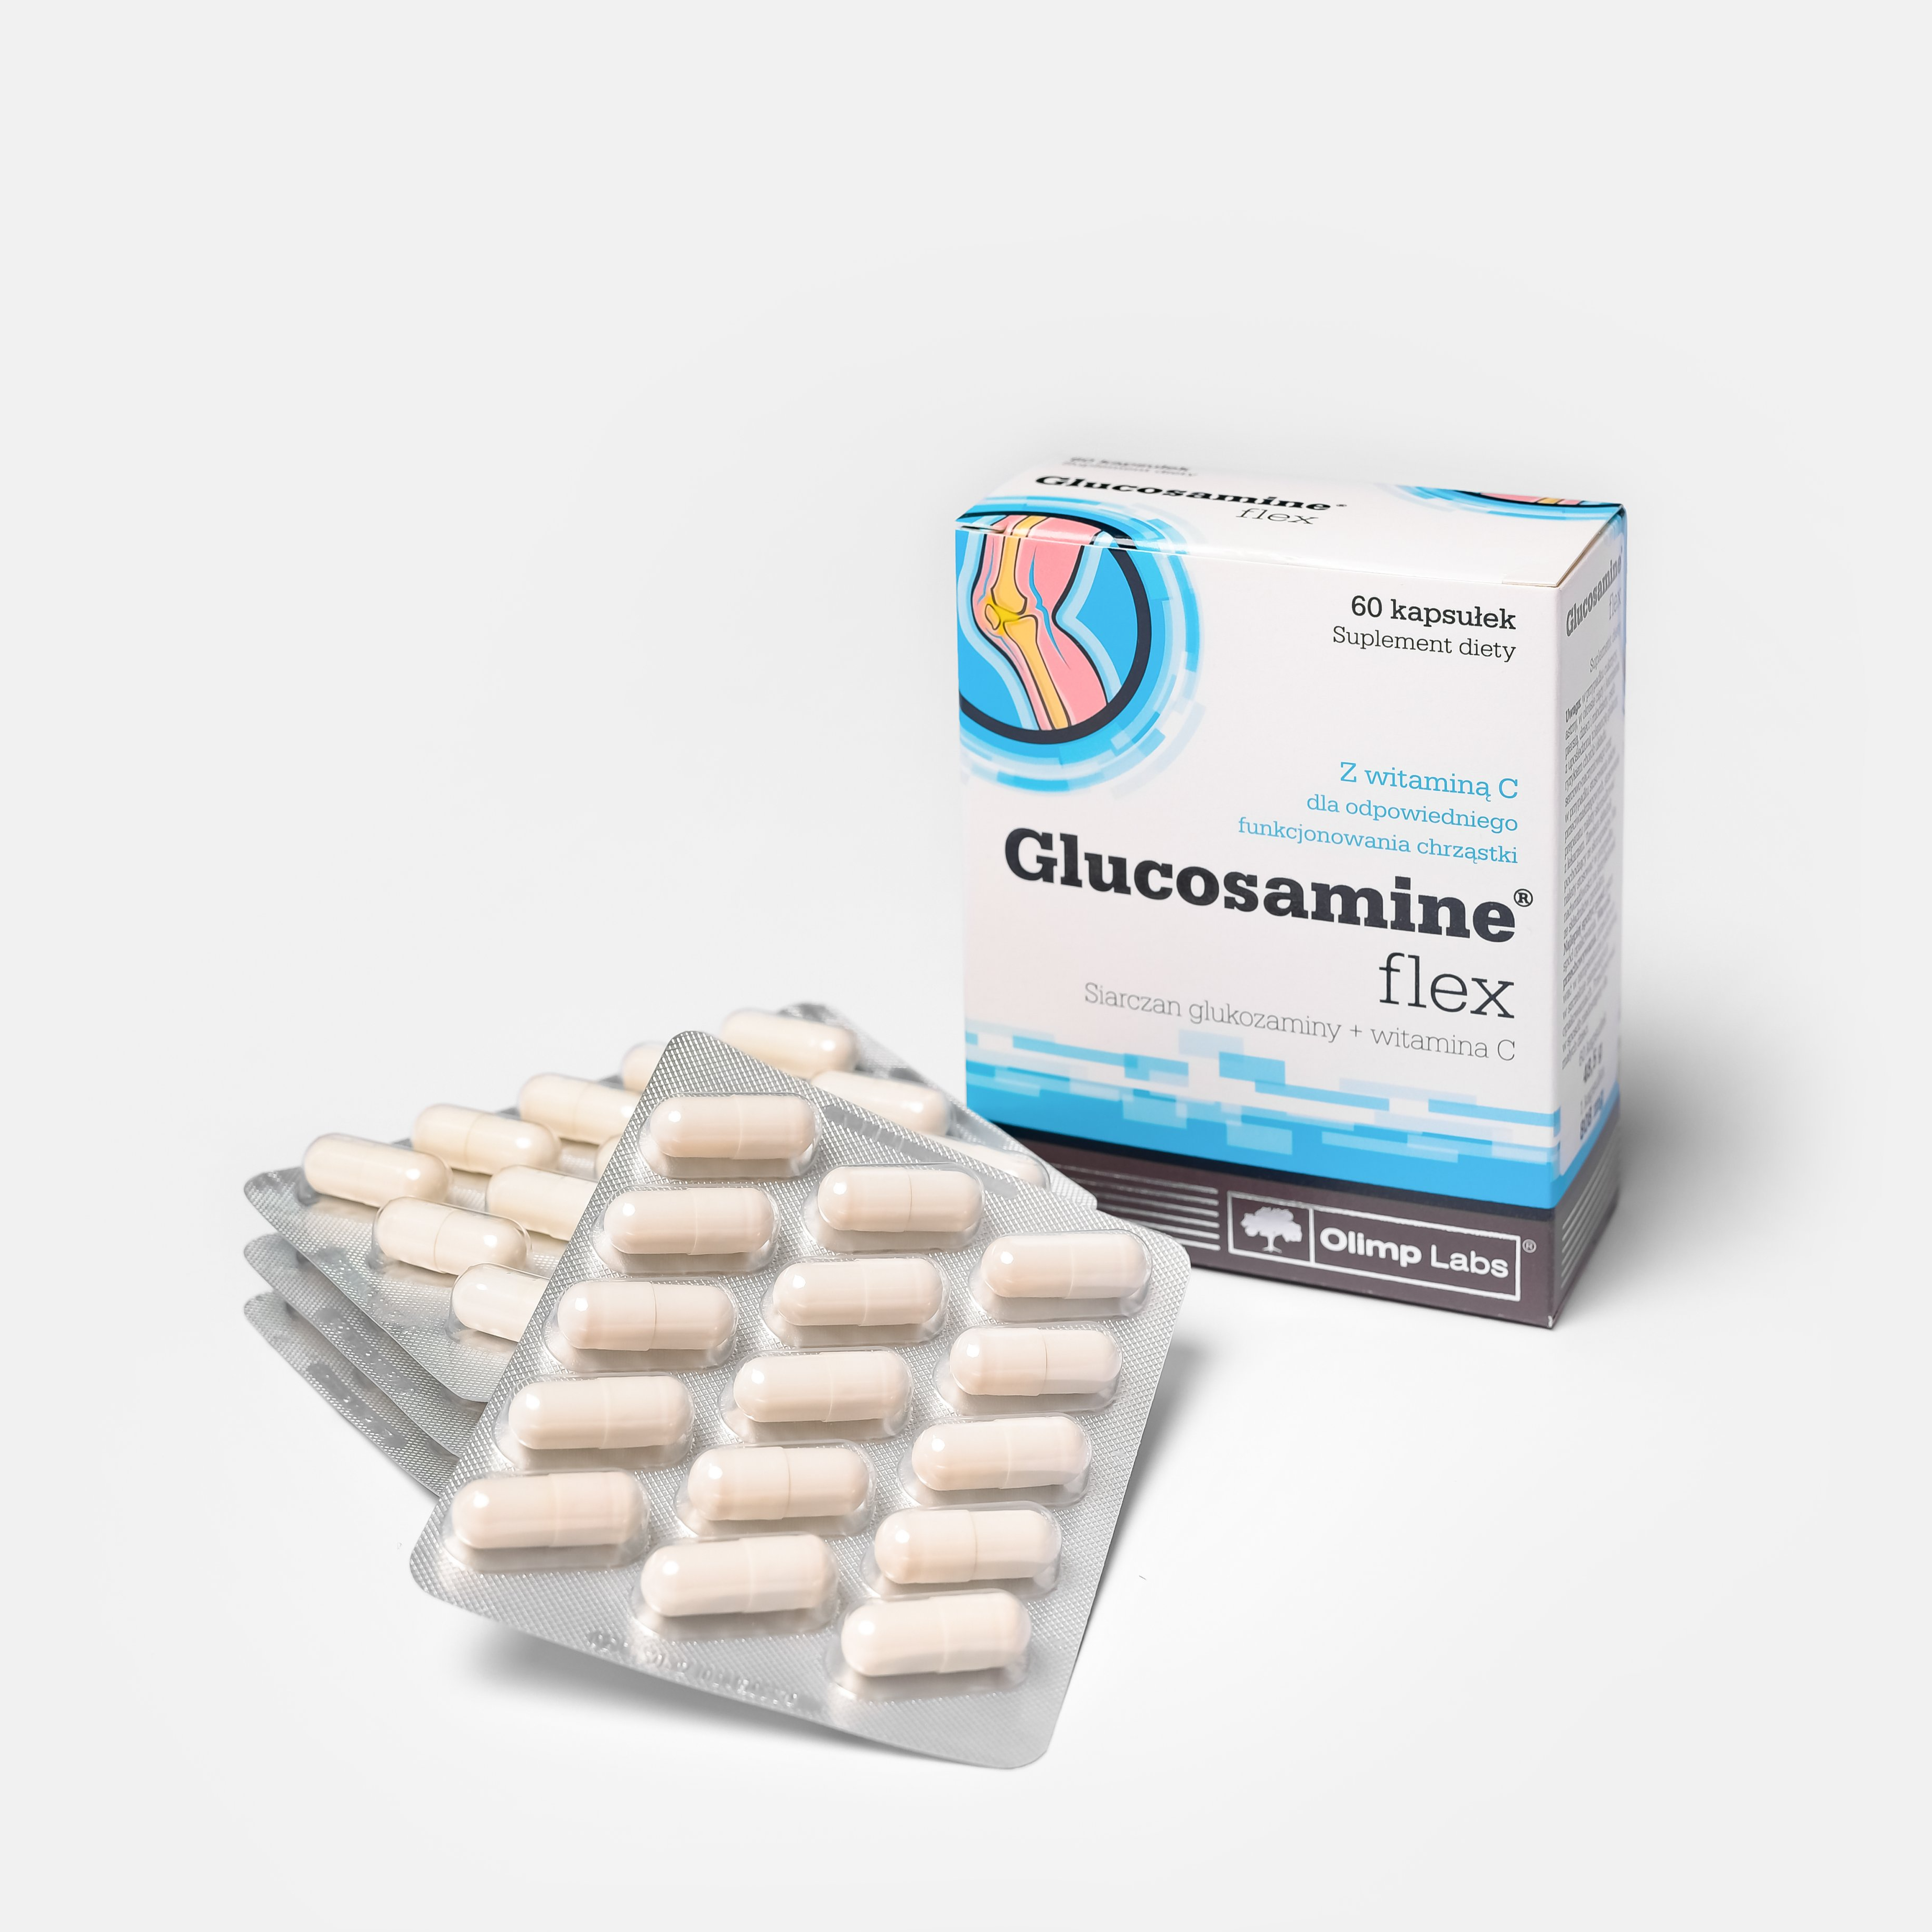 Viên uống bổ khớp Glucosamin Flex hỗ trợ giảm các triệu chứng của thoái hóa khớp, đau sưng khớp, khô khớp